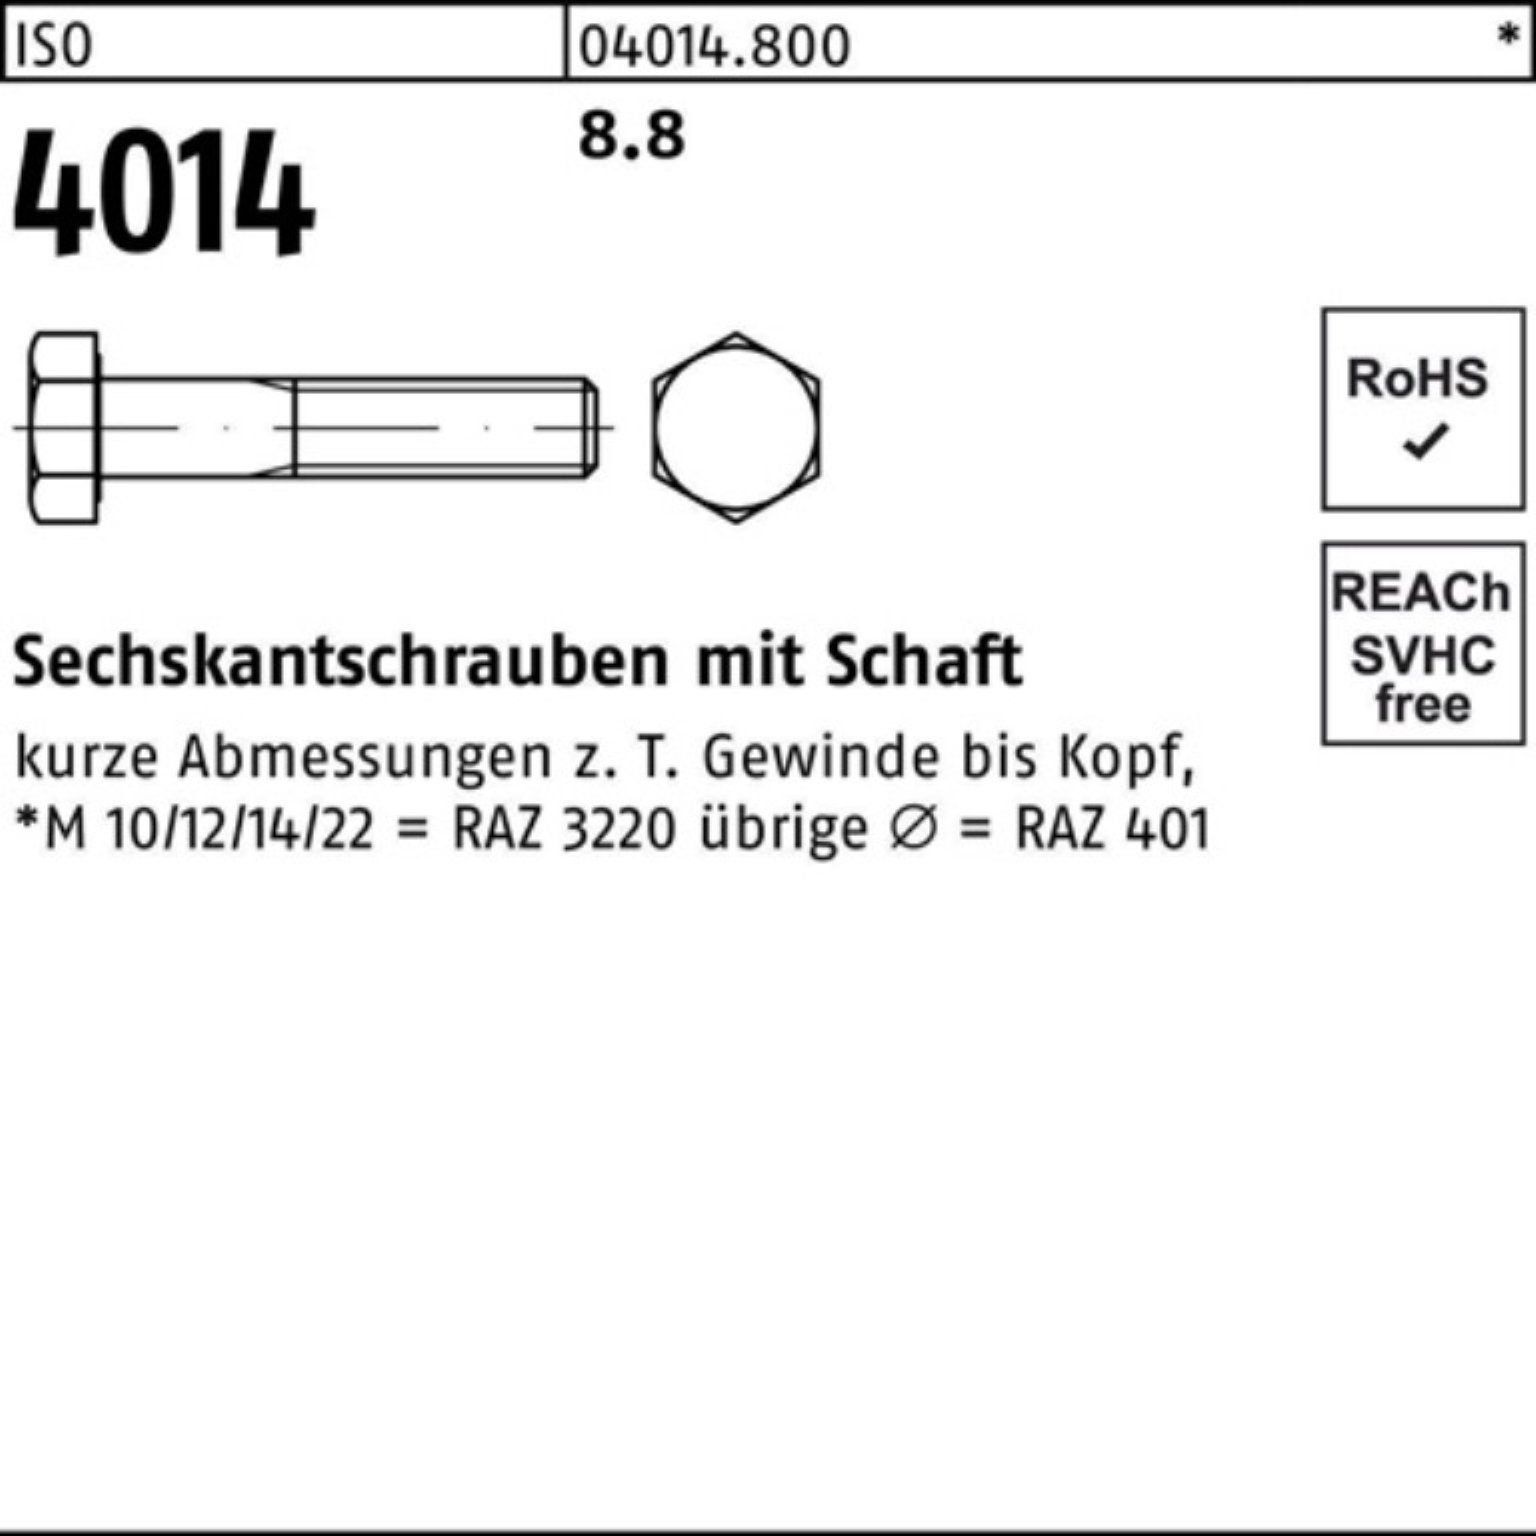 Bufab Sechskantschraube 100er Pack 440 4014 8.8 1 ISO Stück Schaft Sechskantschraube M27x ISO